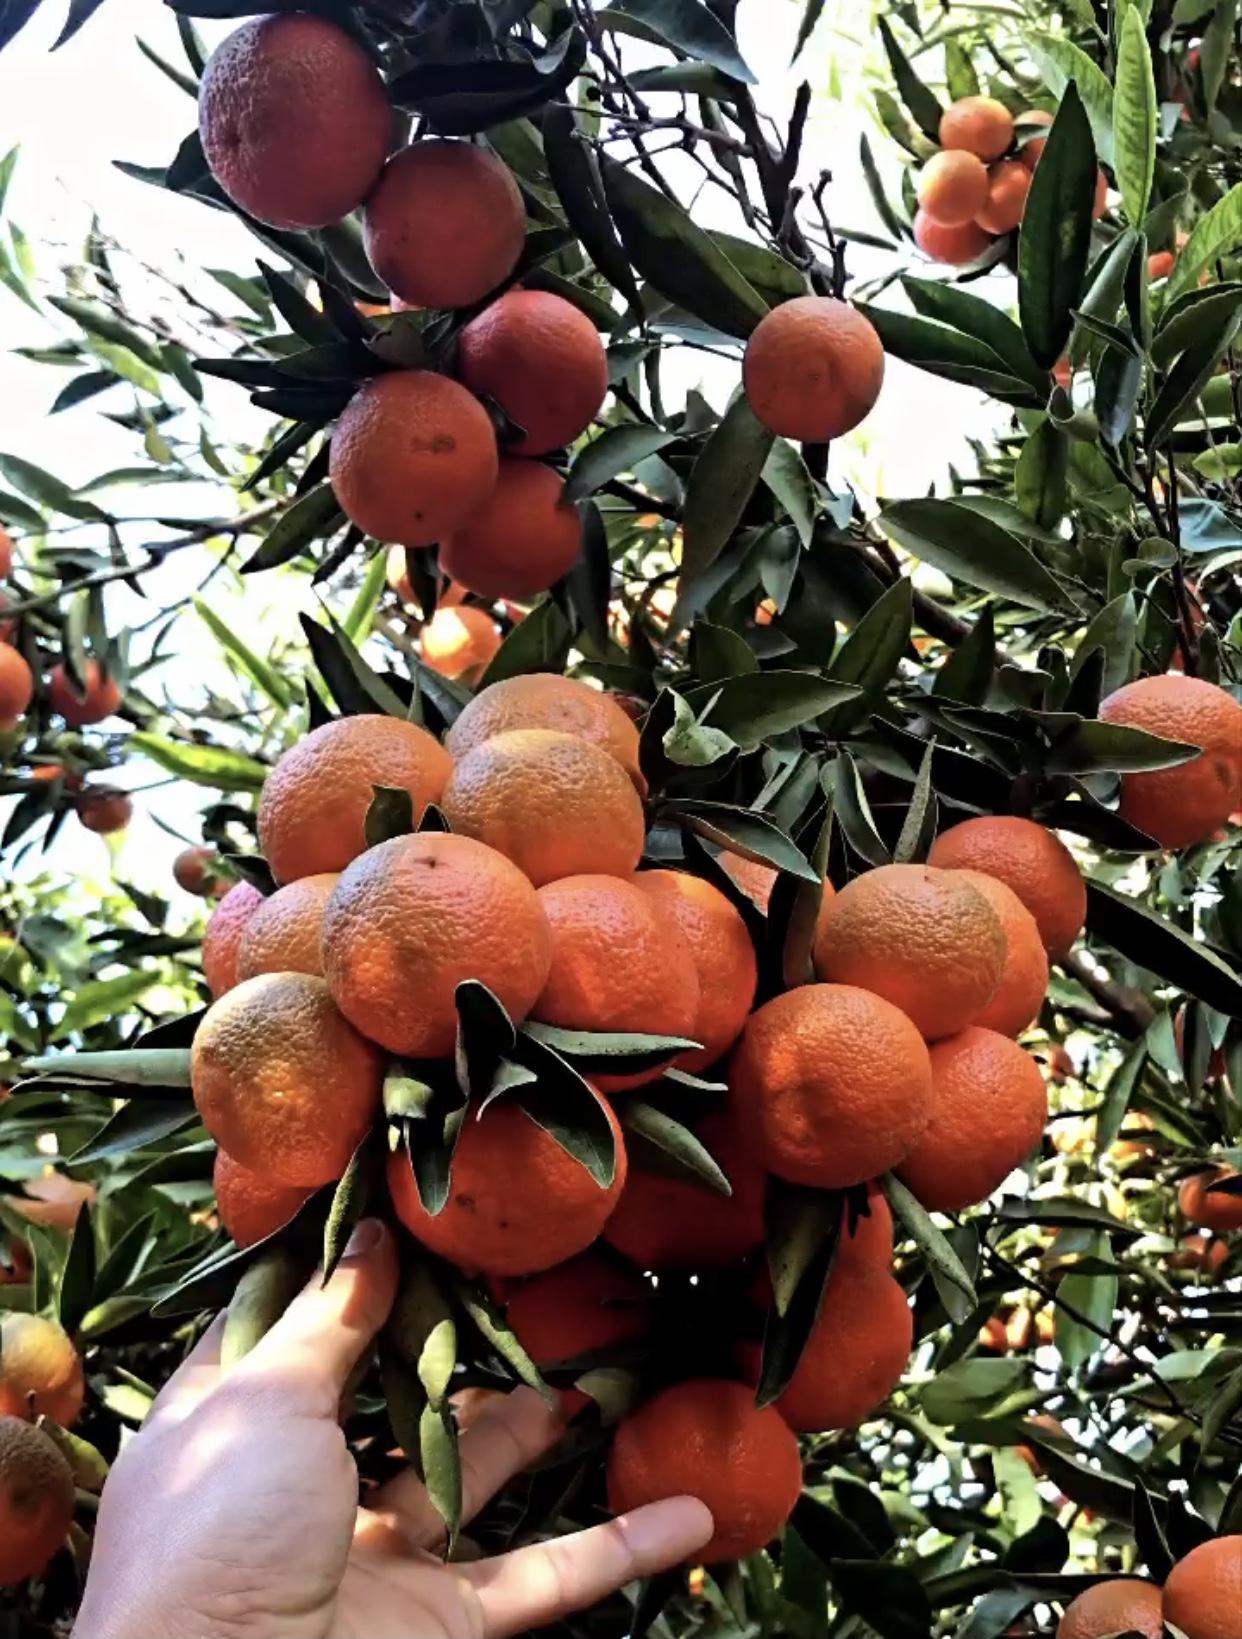 Mandalina - Üretici Ahmet Bahçeci 1.8 tl fiyat ile 110.000 kilogram fremont çeşidi mandalina satmak istiyor